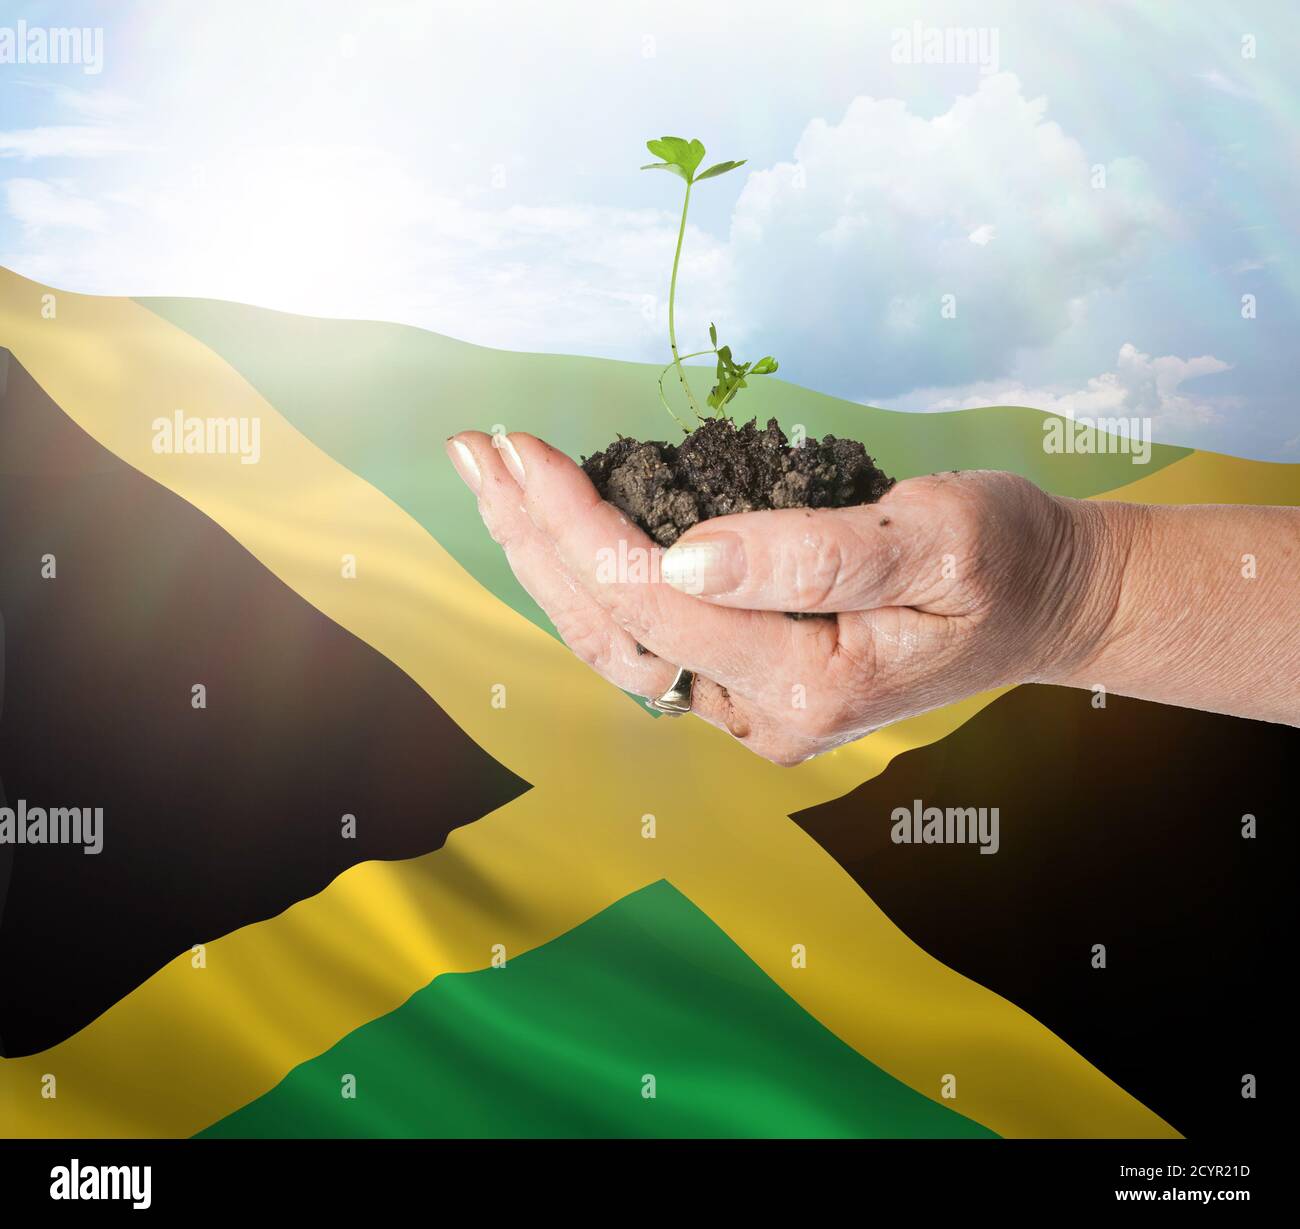 Jamaica crecimiento y nuevo comienzo. Concepto de energía renovable verde y ecología. Mano sosteniendo planta joven. Foto de stock